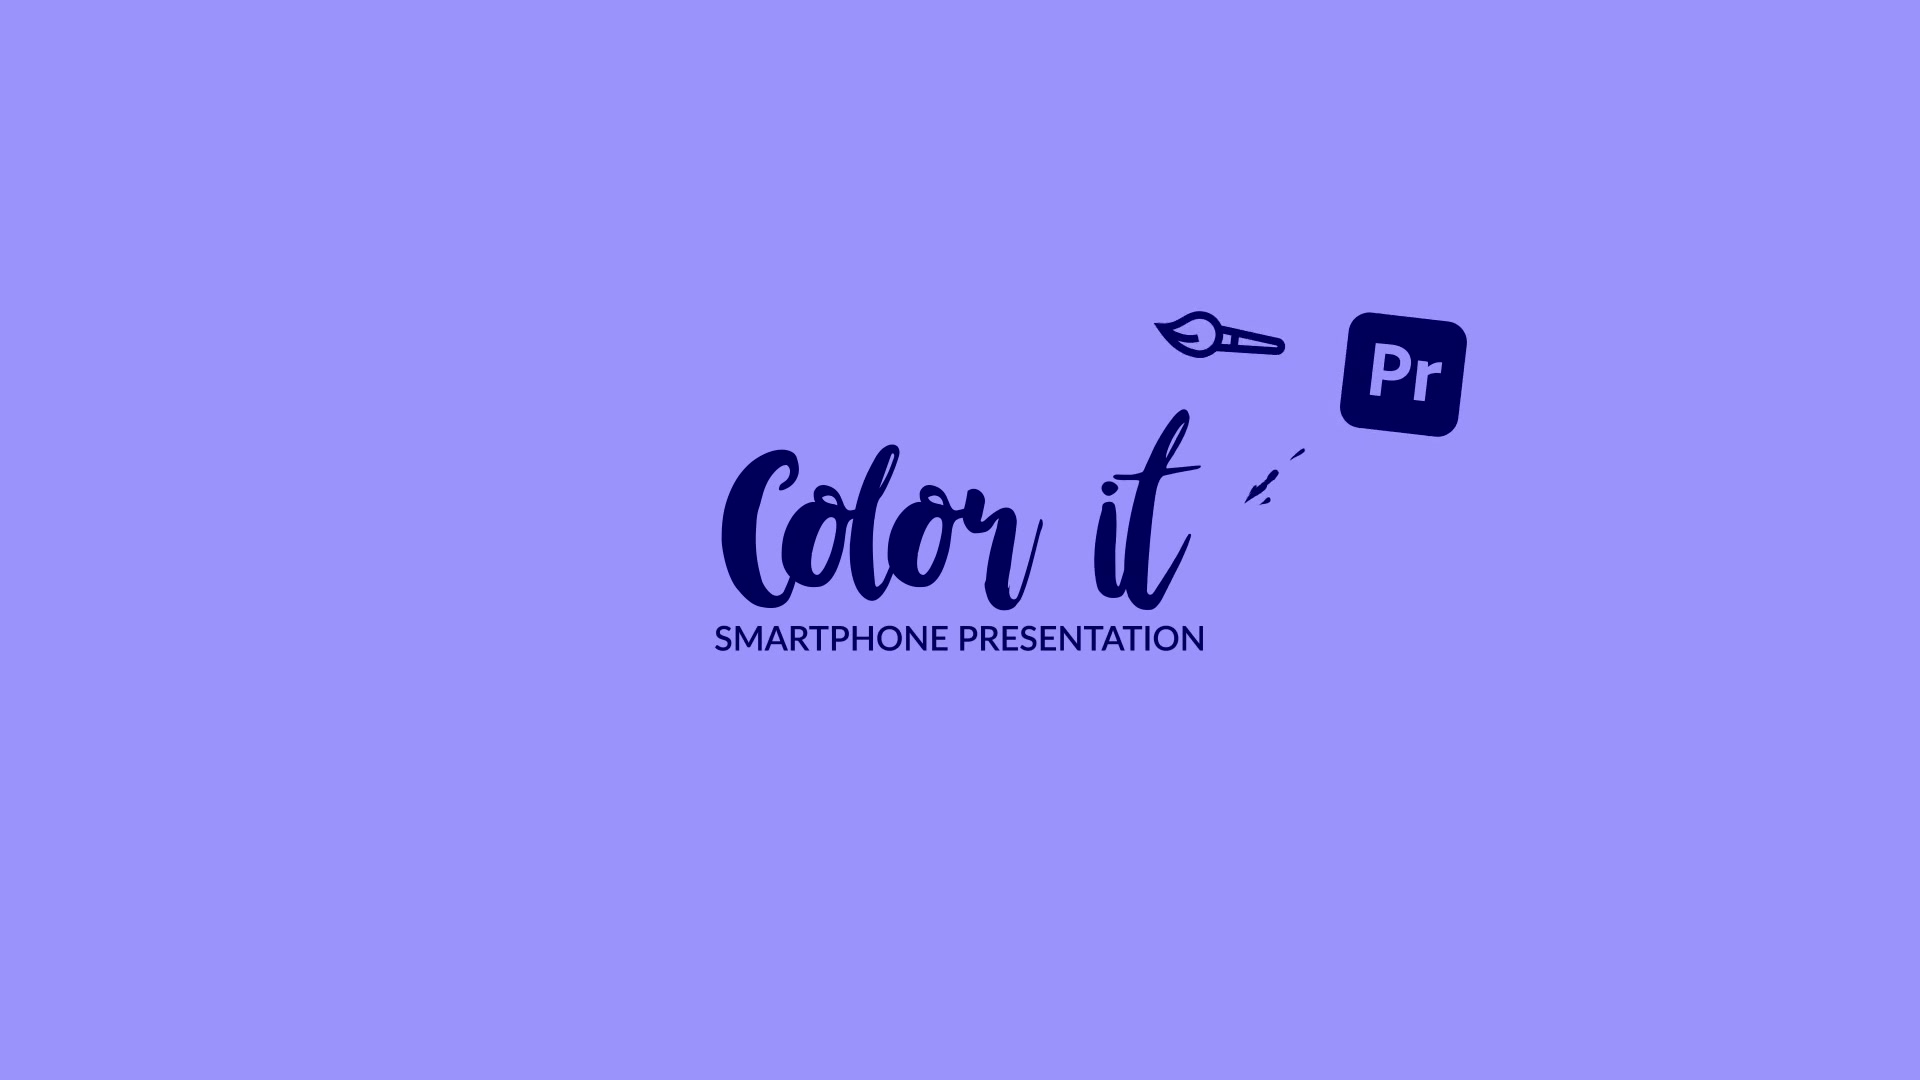 Color it Smartphone Presentation for Premiere Pro Videohive 31779980 Premiere Pro Image 12